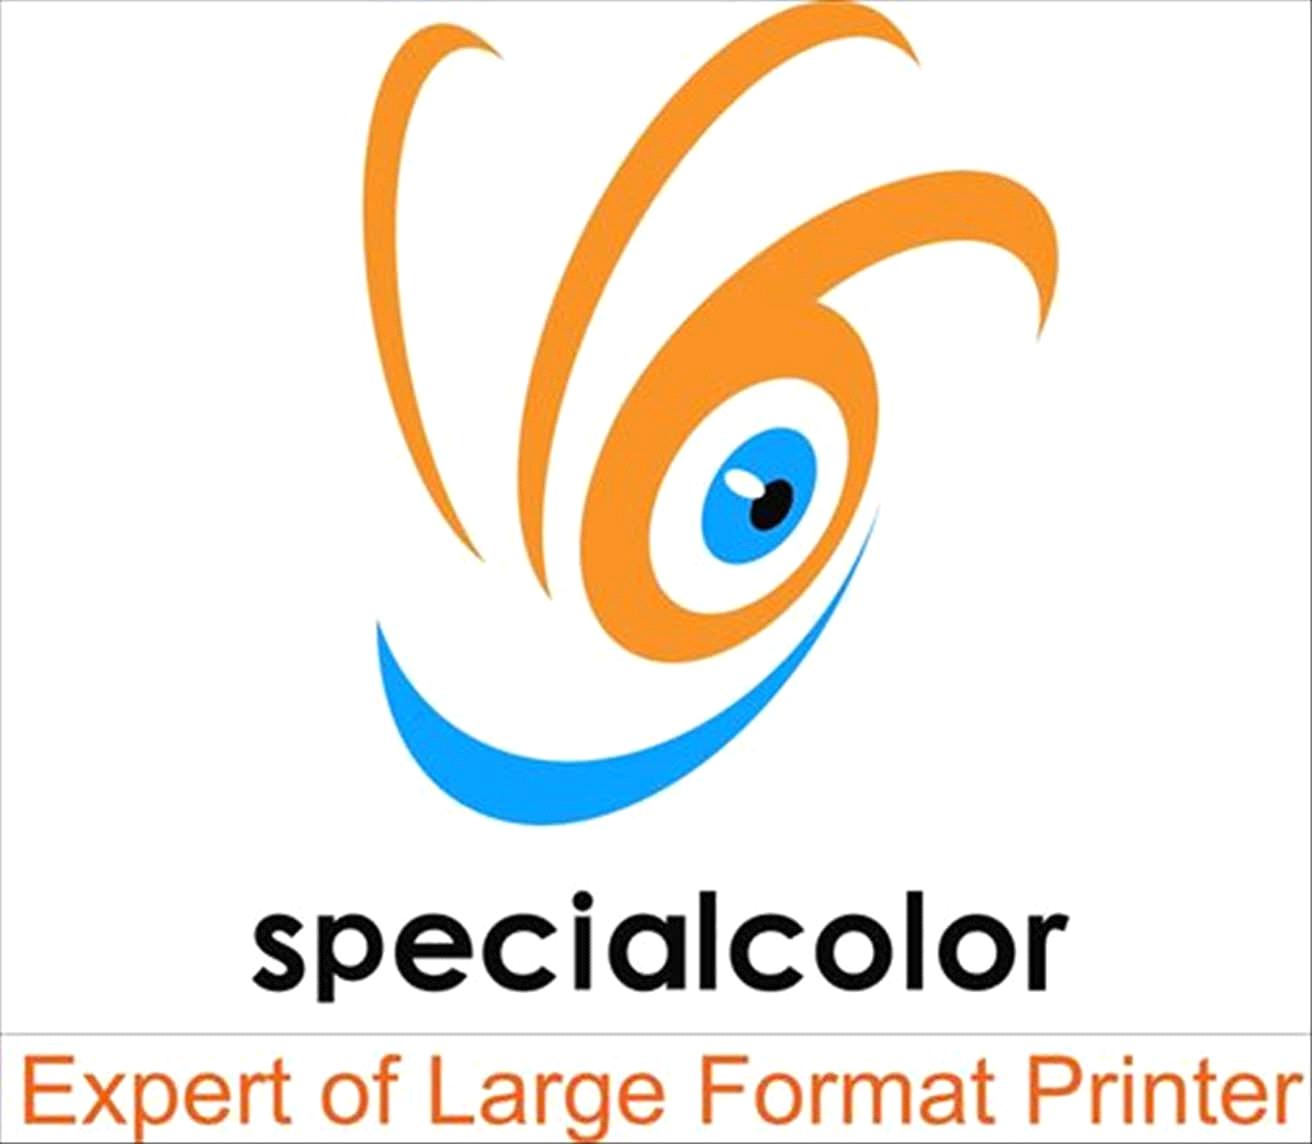 Specialcolor International Company